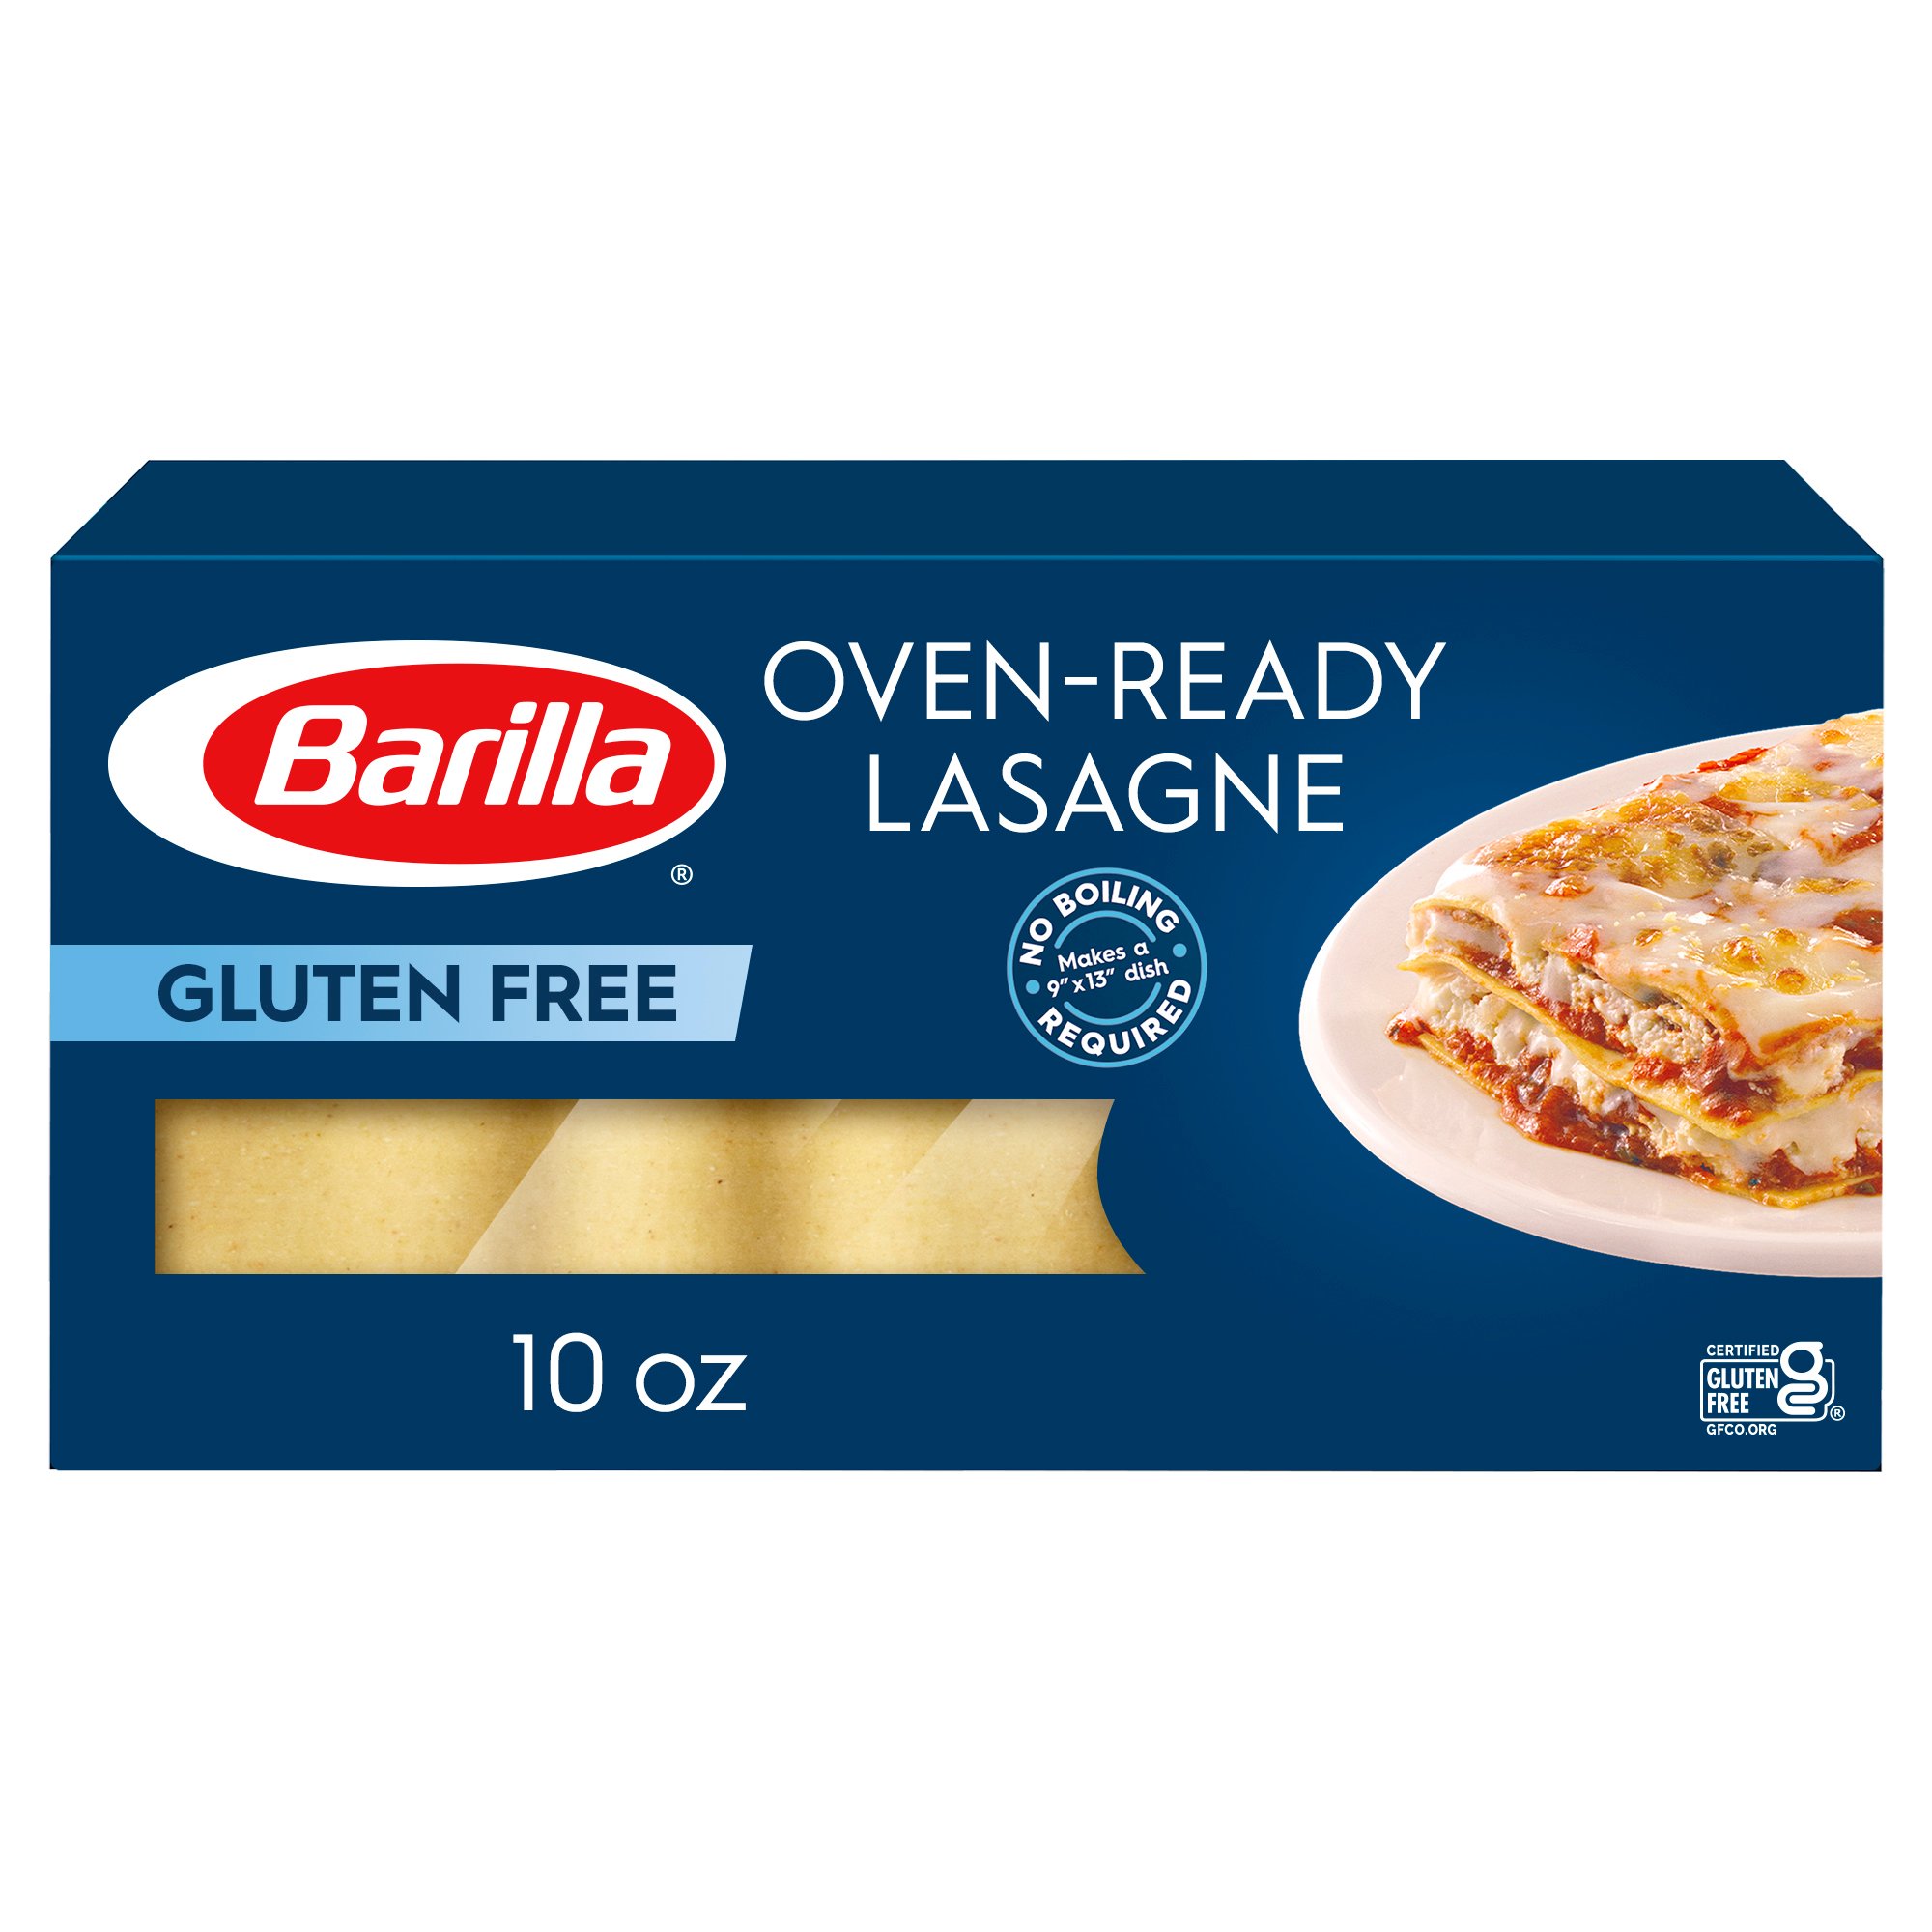 Barilla Gluten Free Oven-Ready Pasta Lasagne - Shop Pasta at H-E-B